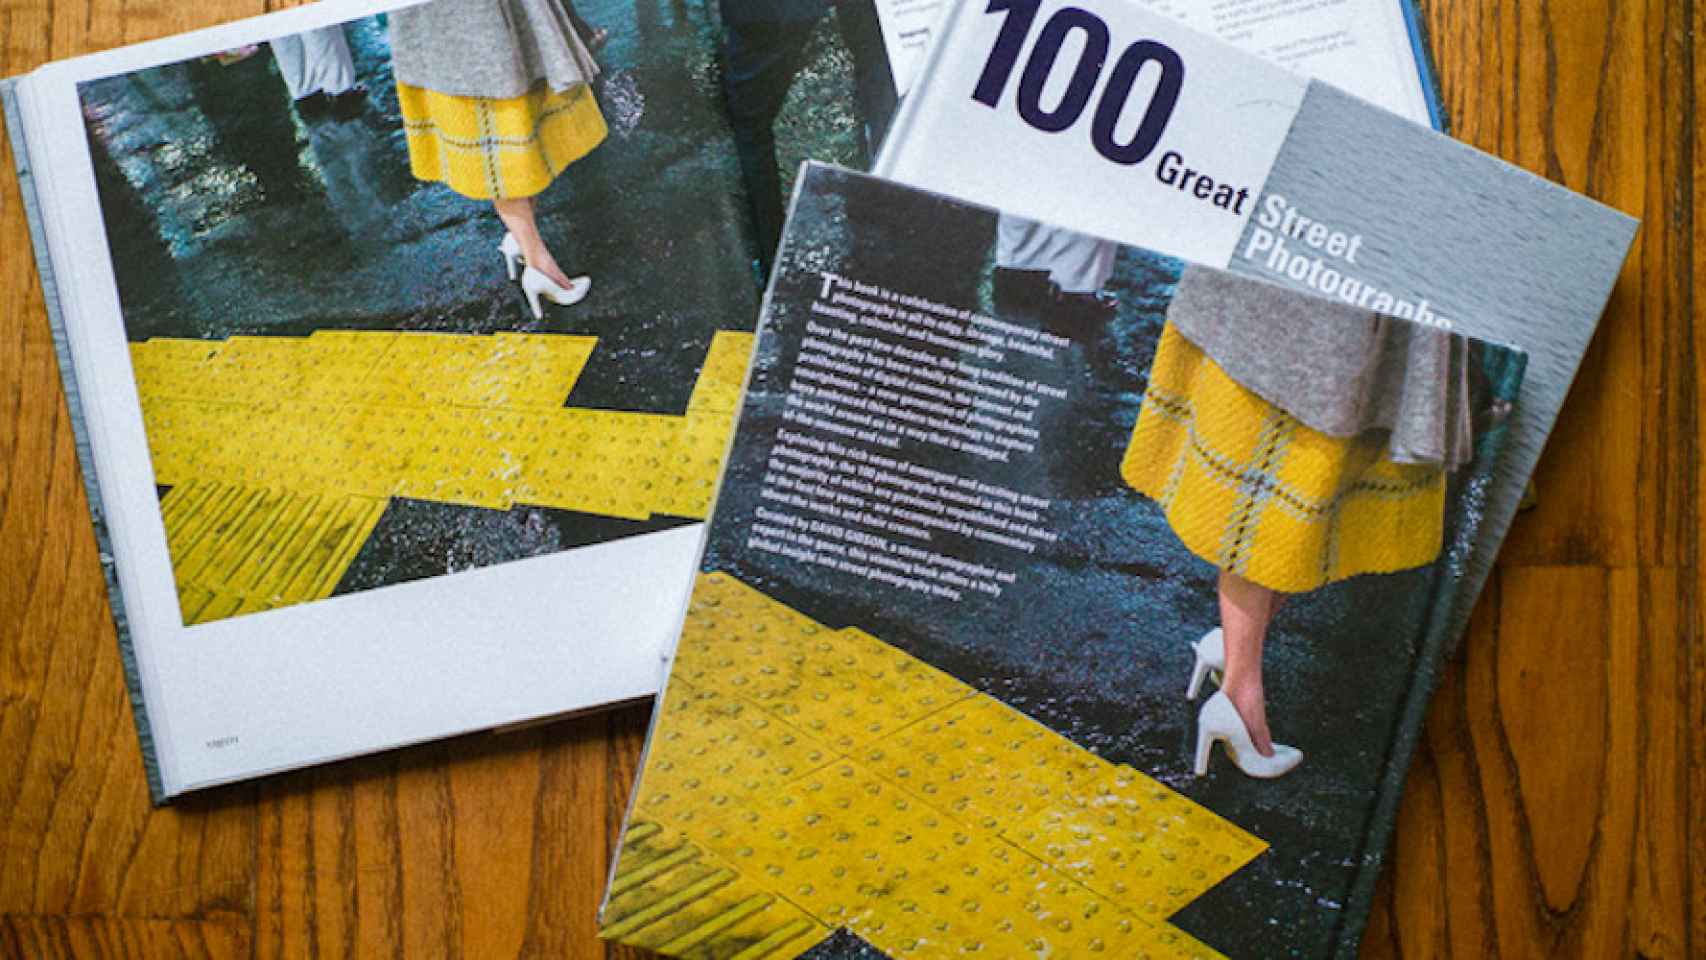 Libro de '100 Great Street Photographs by David Gibson' que recoge la obra de algunos de los mejores fotógrafos urbanos / SHIN NOCUCHI PHOTOGRAPHY